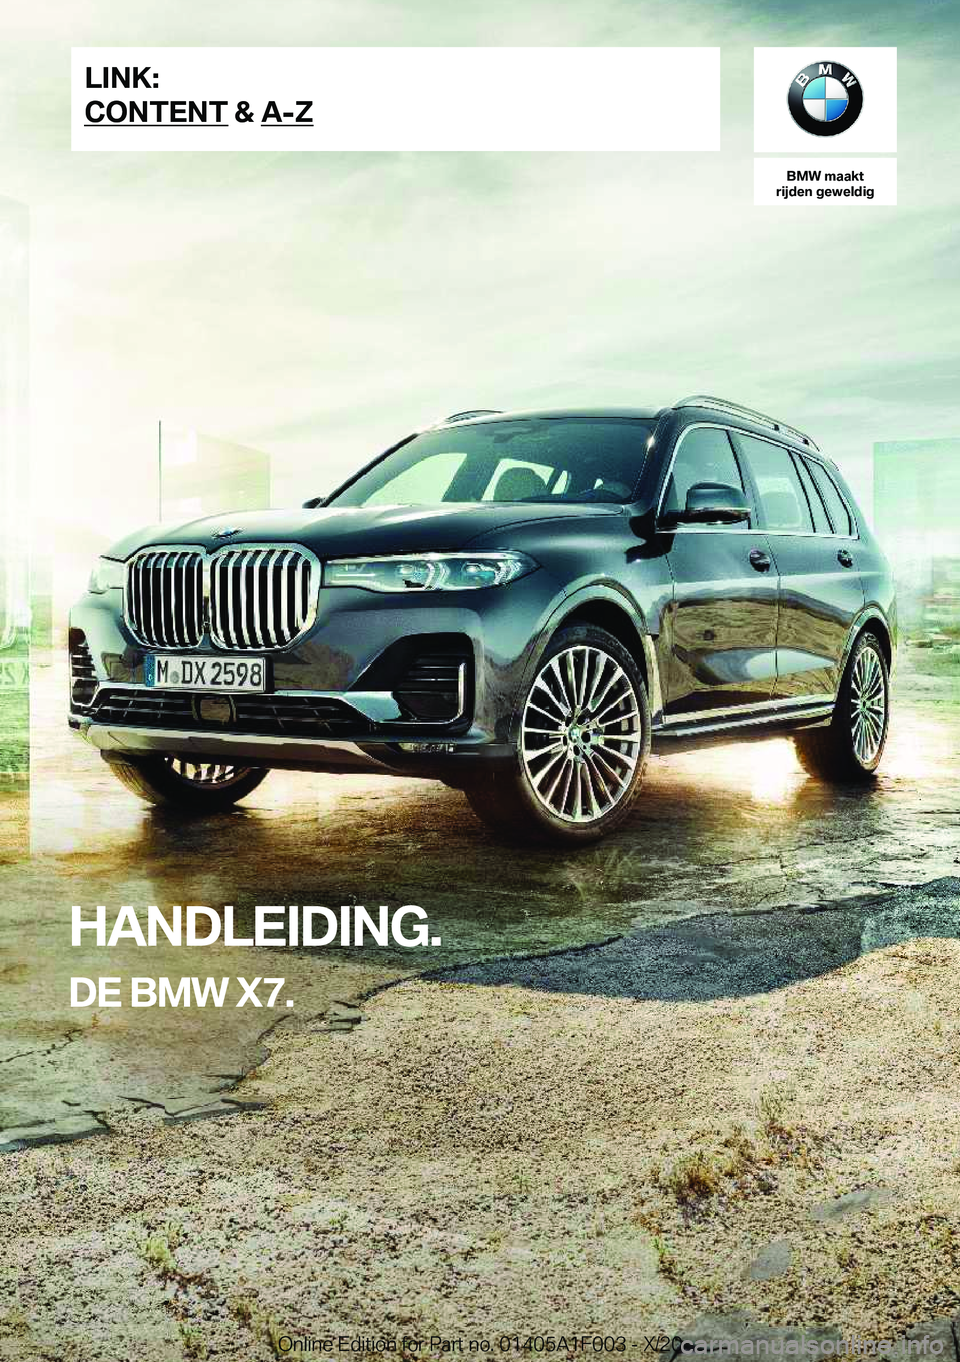 BMW X7 2021  Instructieboekjes (in Dutch) �B�M�W��m�a�a�k�t
�r�i�j�d�e�n��g�e�w�e�l�d�i�g
�H�A�N�D�L�E�I�D�I�N�G�.
�D�E��B�M�W��X�7�.�L�I�N�K�:
�C�O�N�T�E�N�T��&��A�-�Z�O�n�l�i�n�e��E�d�i�t�i�o�n��f�o�r��P�a�r�t��n�o�.��0�1�4�0�5�A